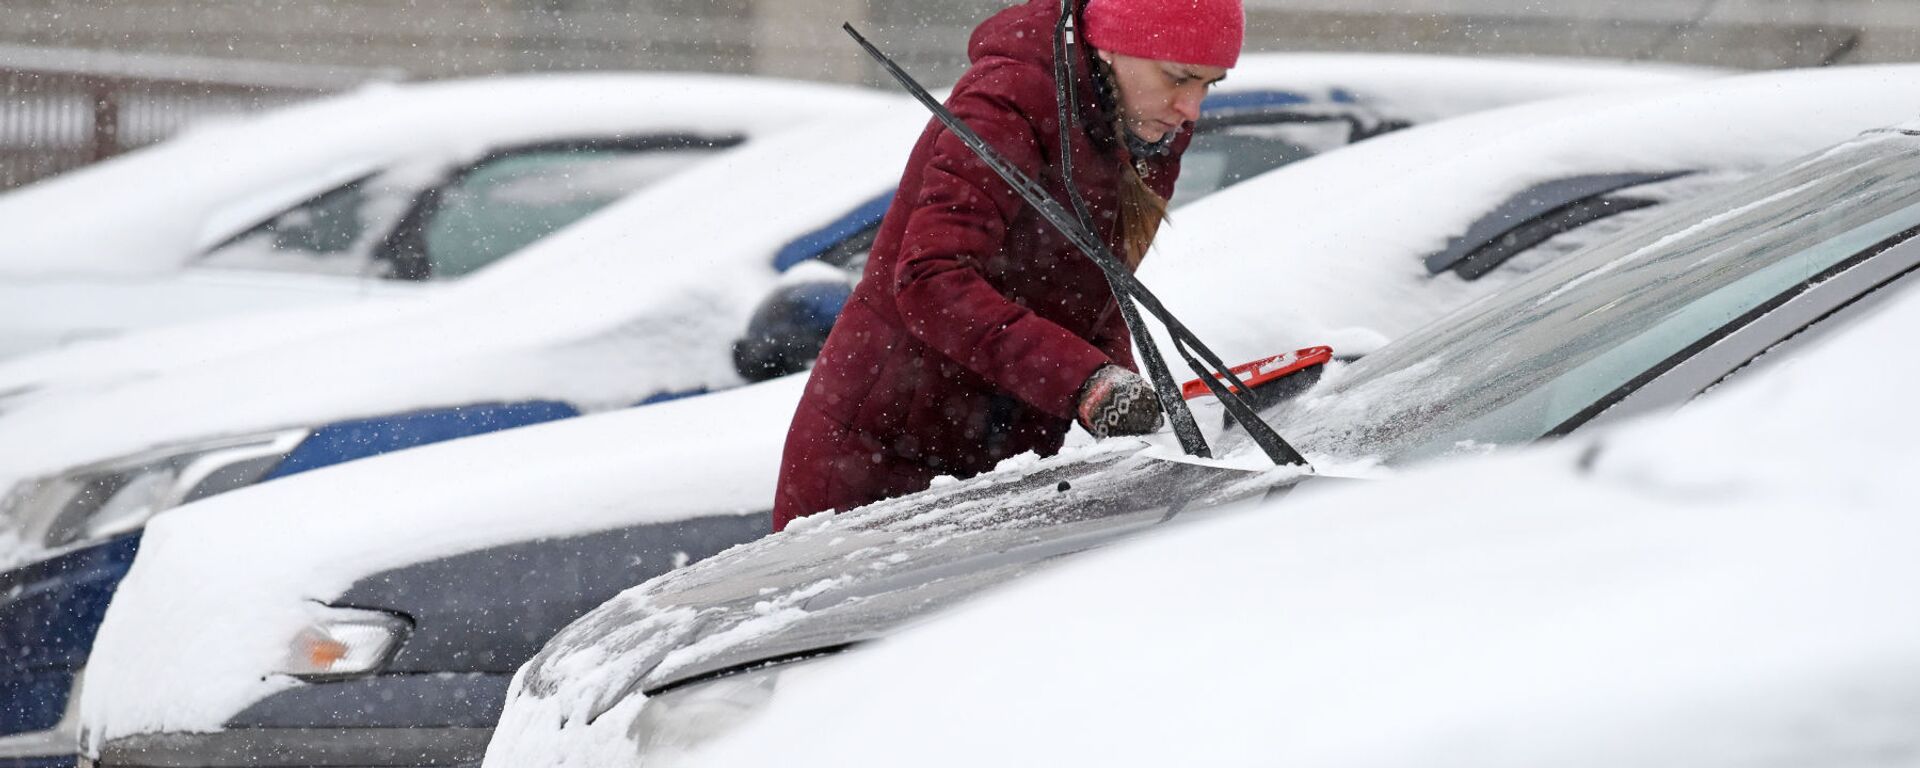 Водитель счищает снег с автомобиля - Sputnik Беларусь, 1920, 23.11.2021